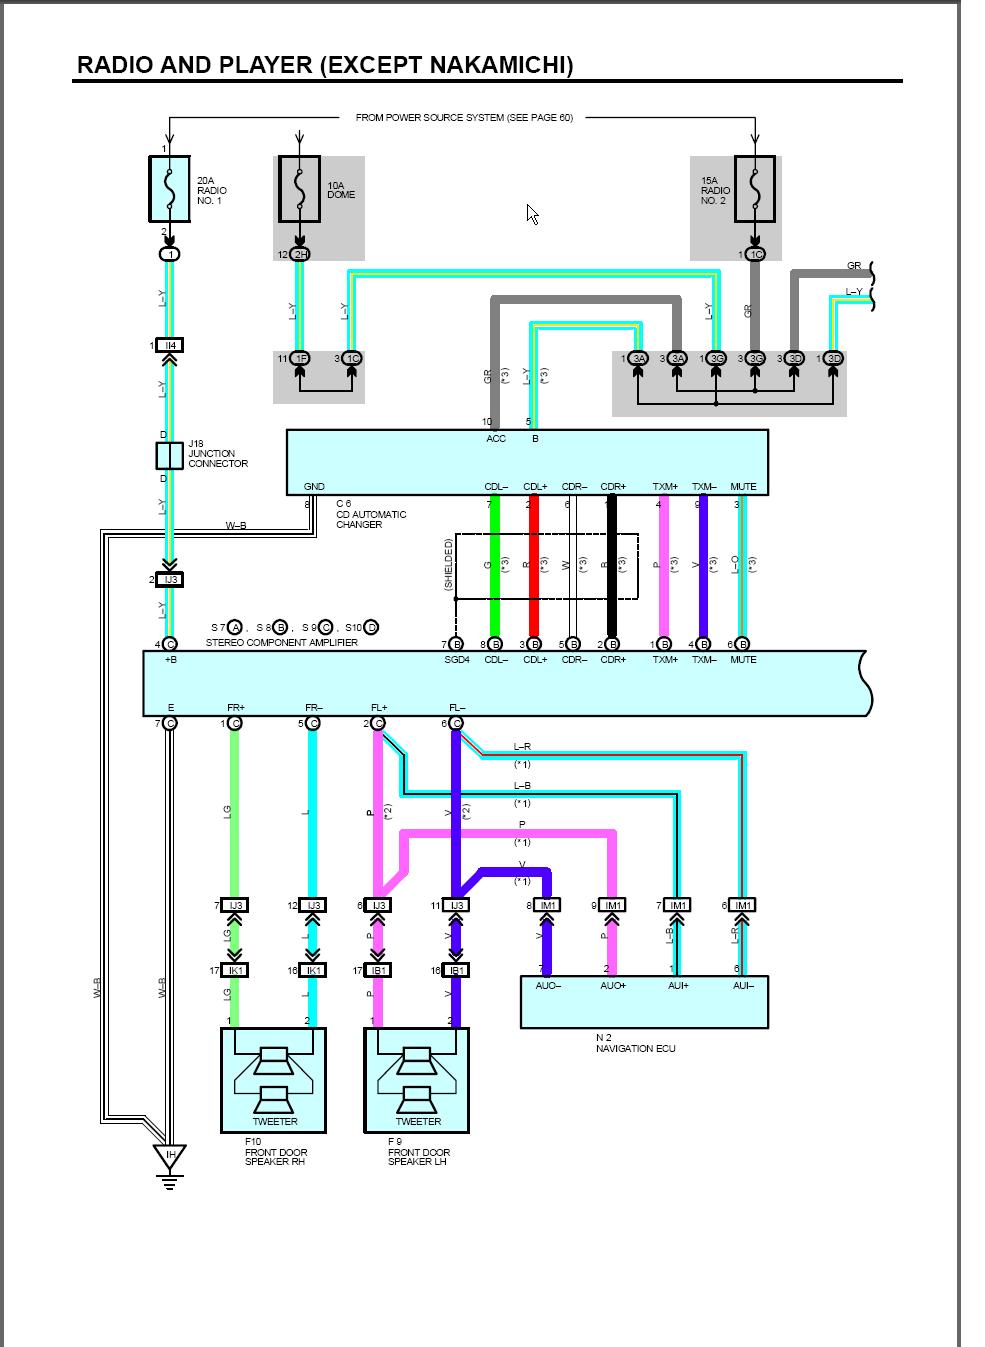 wiring diagram help - ClubLexus - Lexus Forum Discussion 2005 lexus rx330 radio wiring diagram 